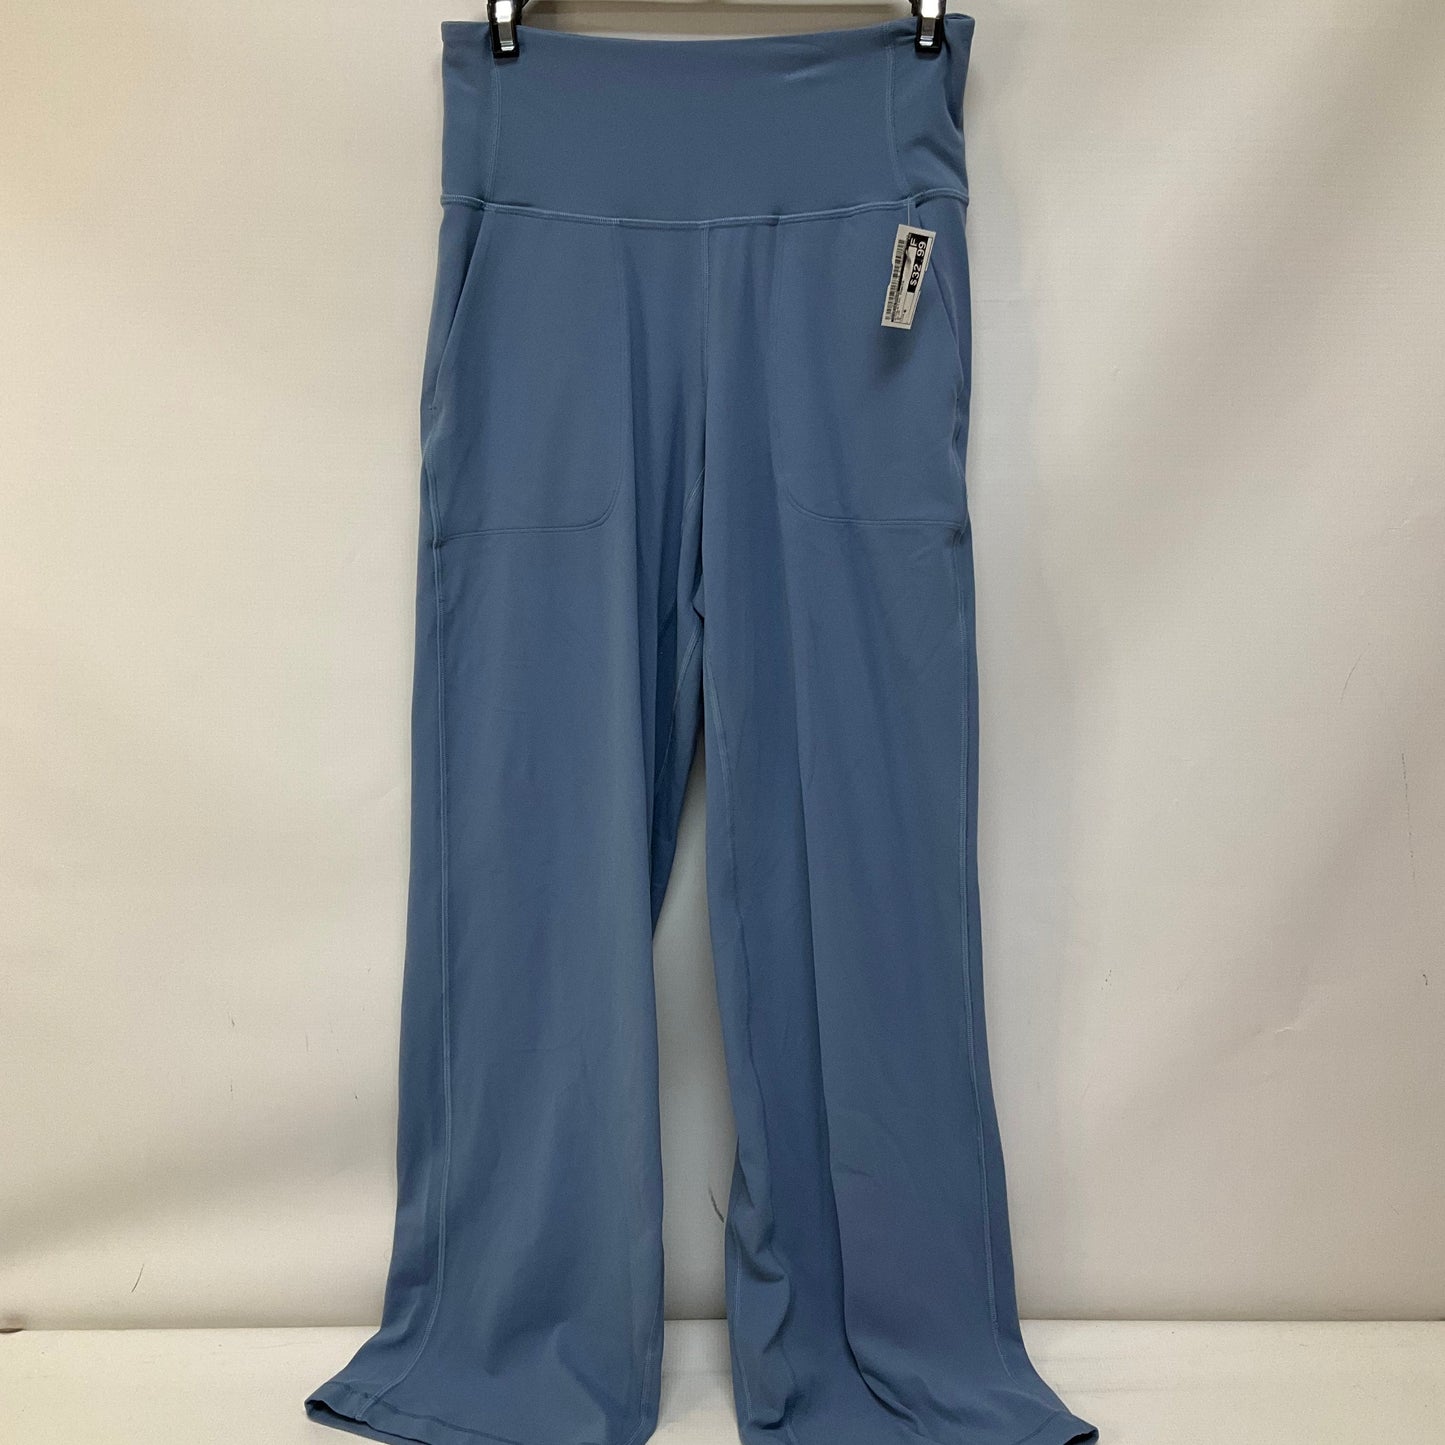 Blue Athletic Pants Lululemon, Size 6